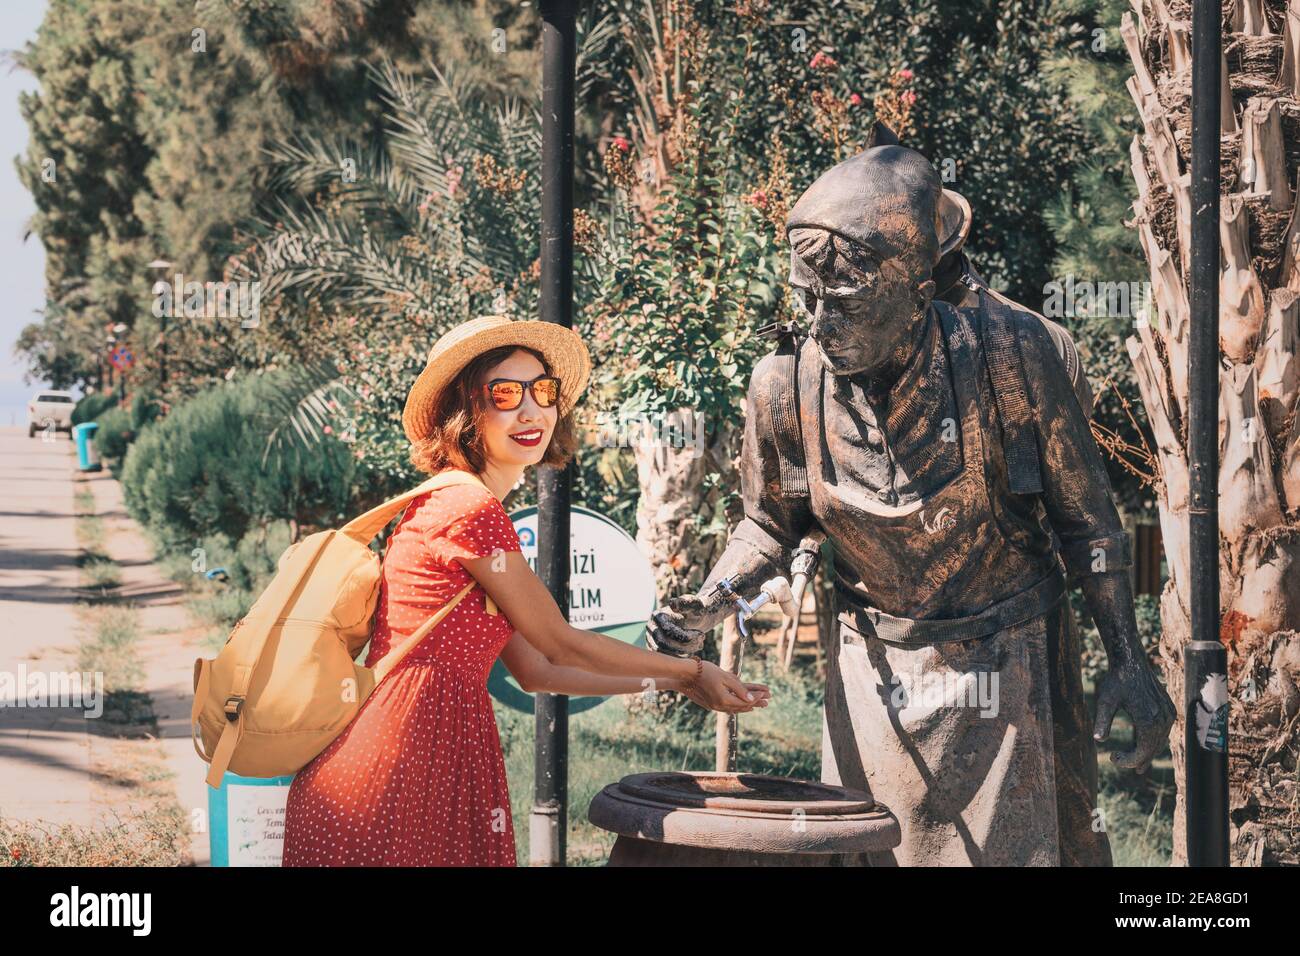 04 de septiembre de 2020, Turquía, Antalya: Mujer feliz se lava las manos en la calle en una fuente de primavera en forma de escultura de un portaagua. Foto de stock